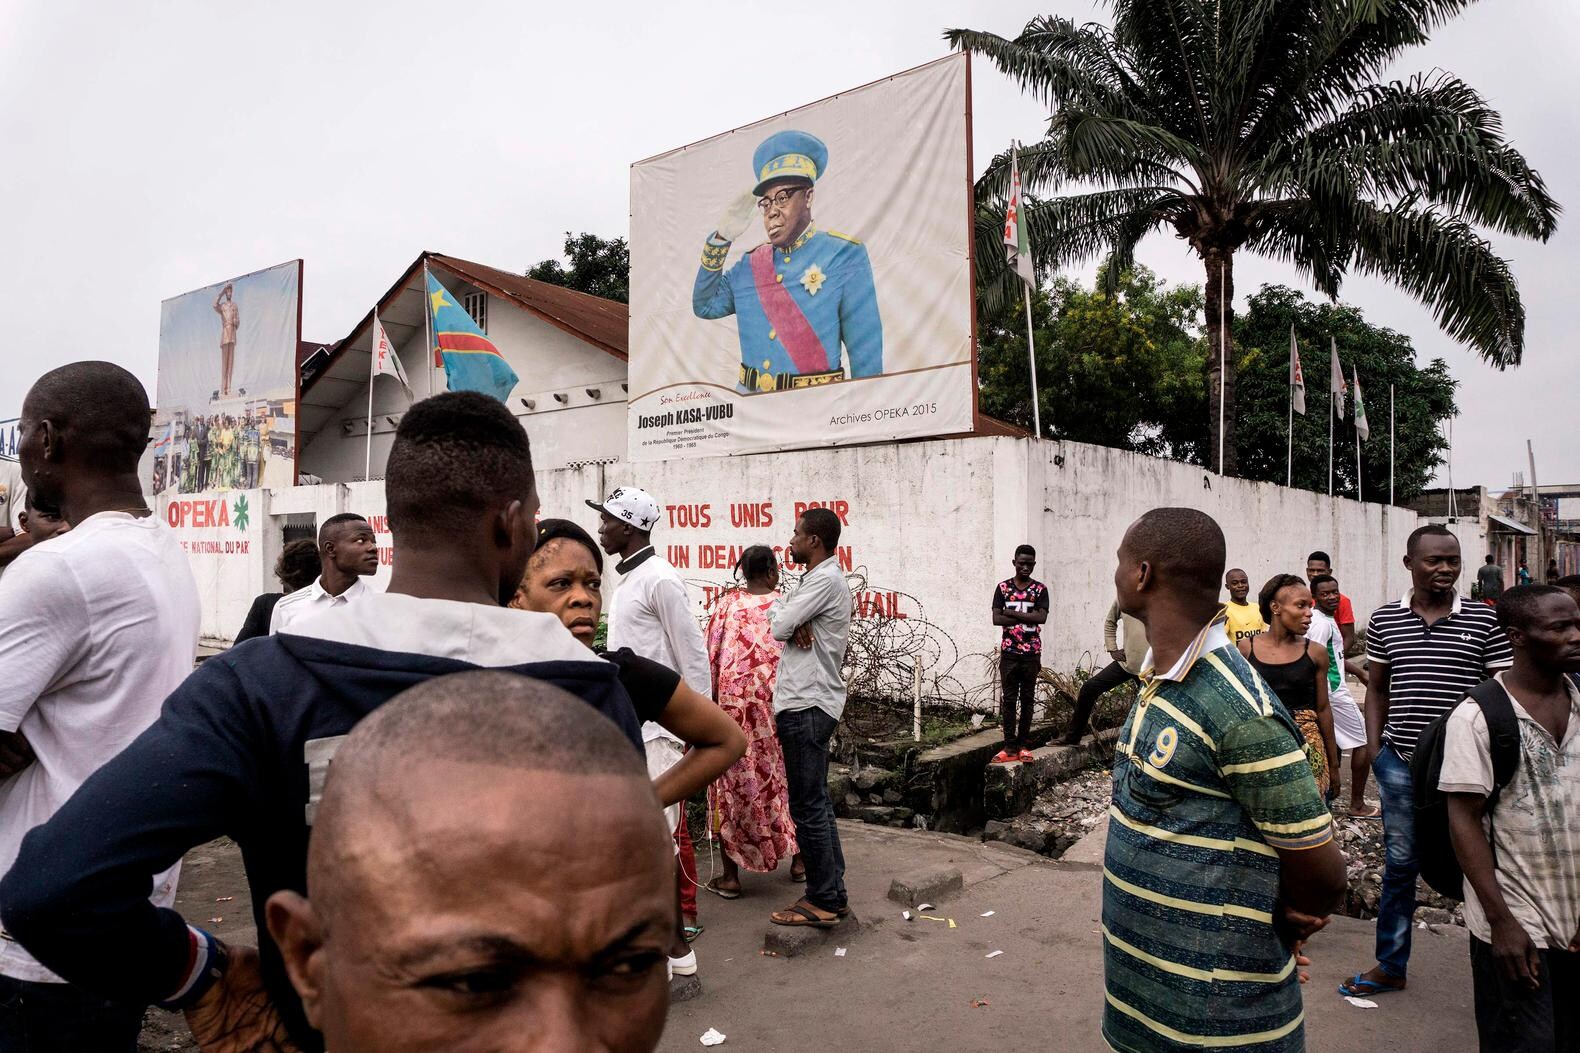 4. Spreekt het Vaticaan zich uit over de actuele crisis in Congo?